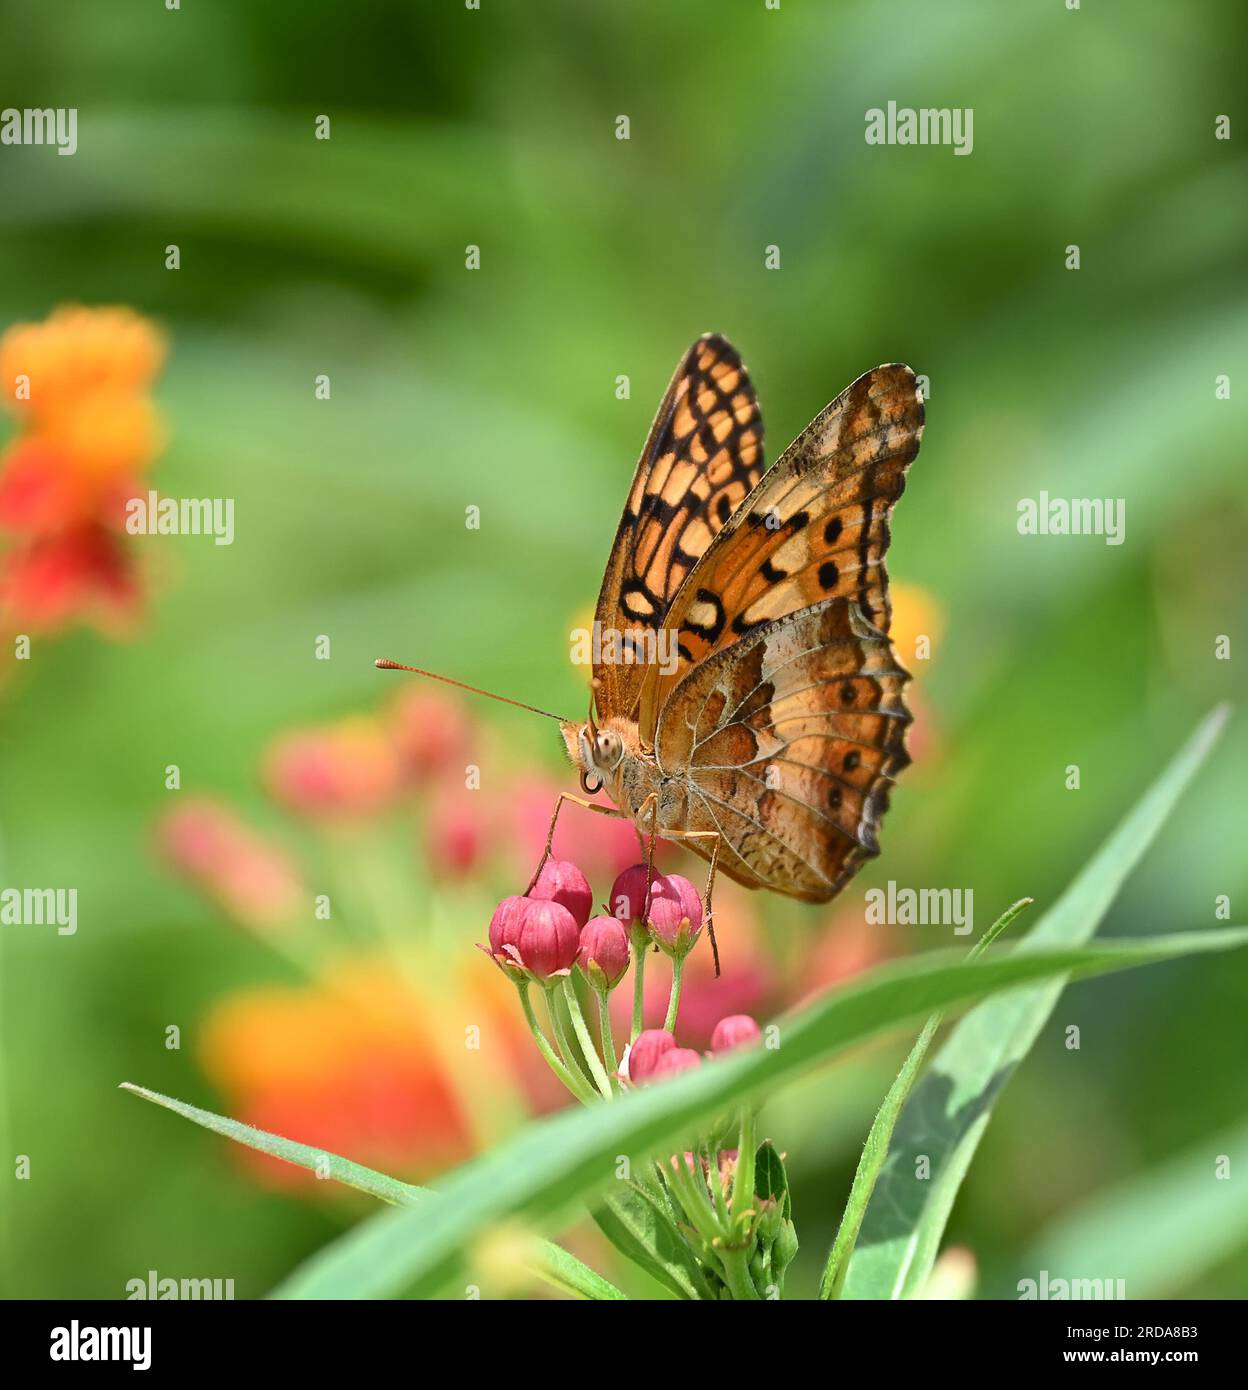 Variegated Fritillary butterfly (Euptoieta claudia) feeding on Milkweed flowers in the summer garden. Stock Photo